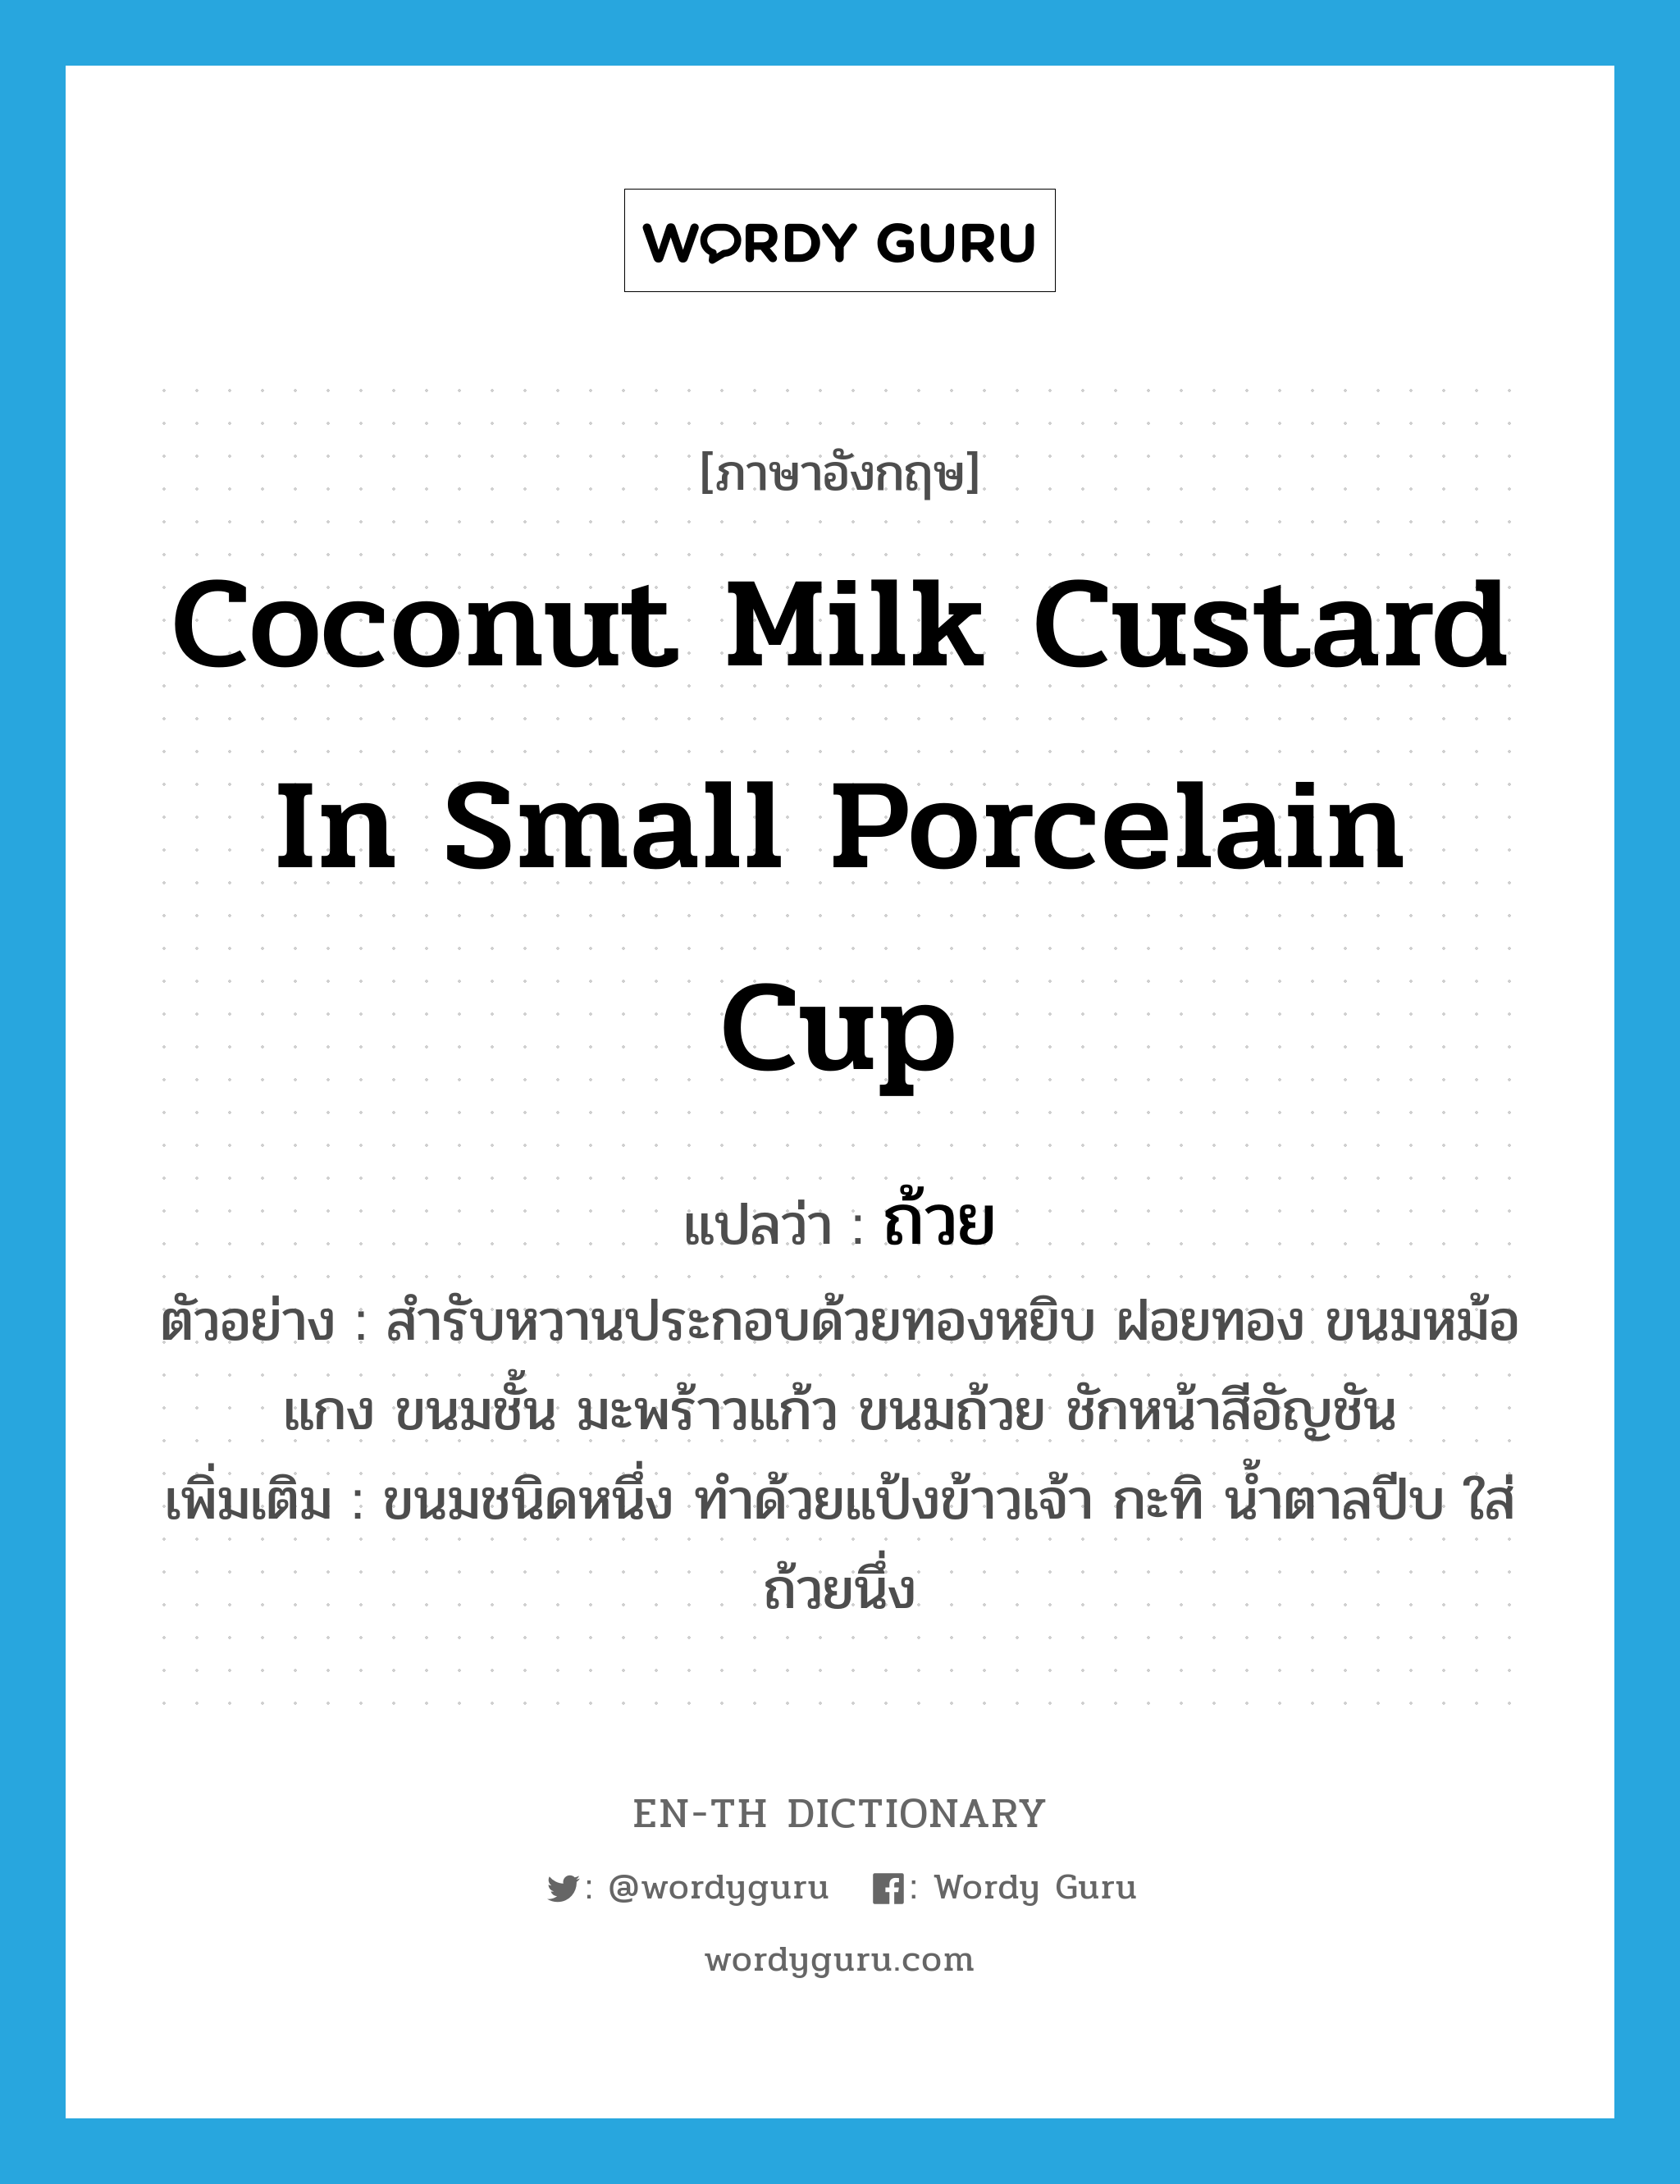 coconut milk custard in small porcelain cup แปลว่า?, คำศัพท์ภาษาอังกฤษ coconut milk custard in small porcelain cup แปลว่า ถ้วย ประเภท N ตัวอย่าง สำรับหวานประกอบด้วยทองหยิบ ฝอยทอง ขนมหม้อแกง ขนมชั้น มะพร้าวแก้ว ขนมถ้วย ชักหน้าสีอัญชัน เพิ่มเติม ขนมชนิดหนึ่ง ทำด้วยแป้งข้าวเจ้า กะทิ น้ำตาลปีบ ใส่ถ้วยนึ่ง หมวด N